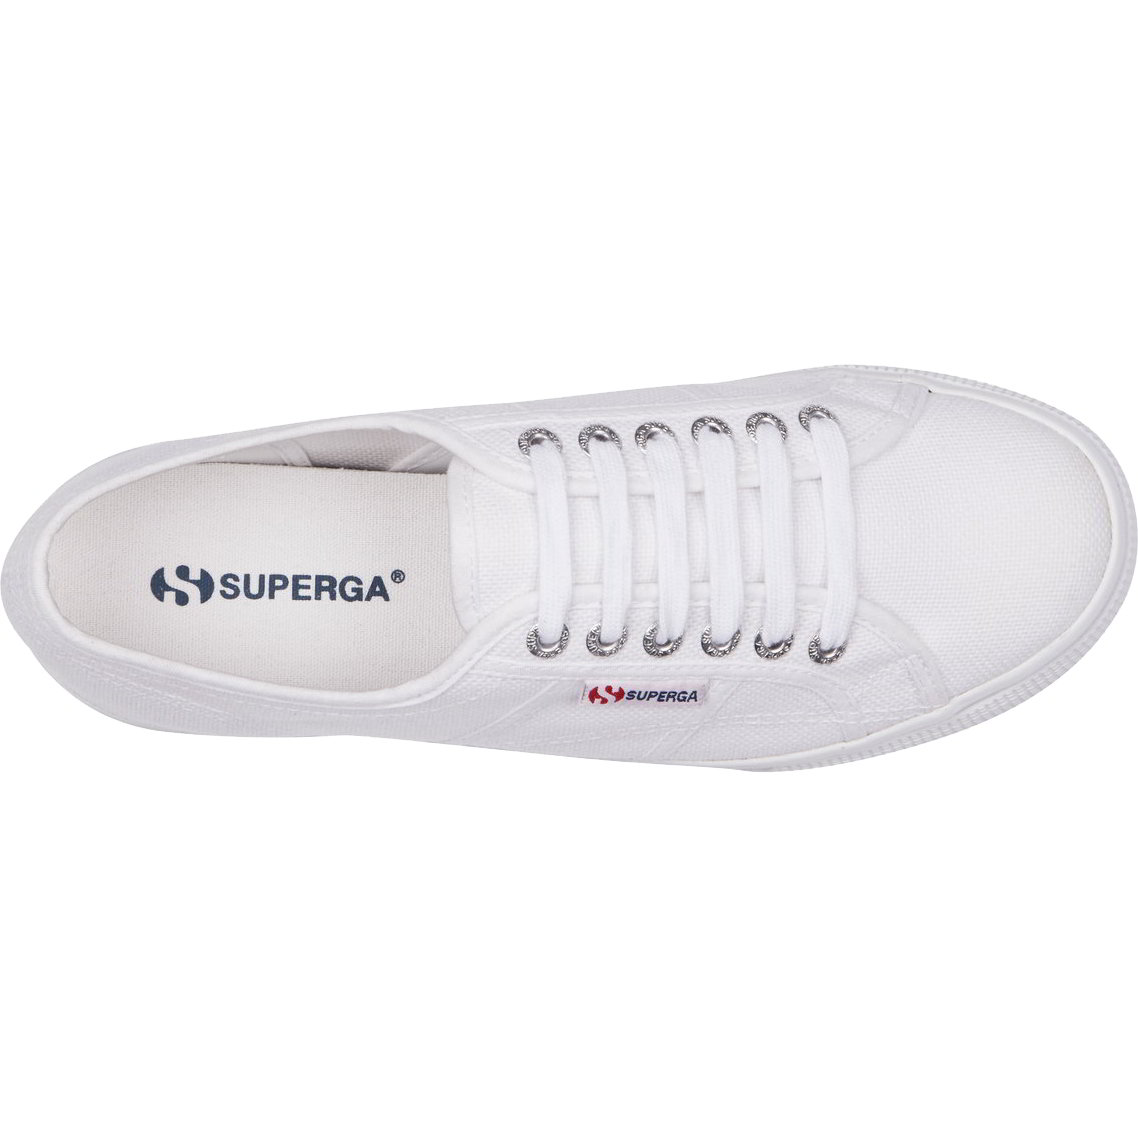 Superga Womens 2790 Linea Chunky Platform Trainers Shoes - UK 7.5